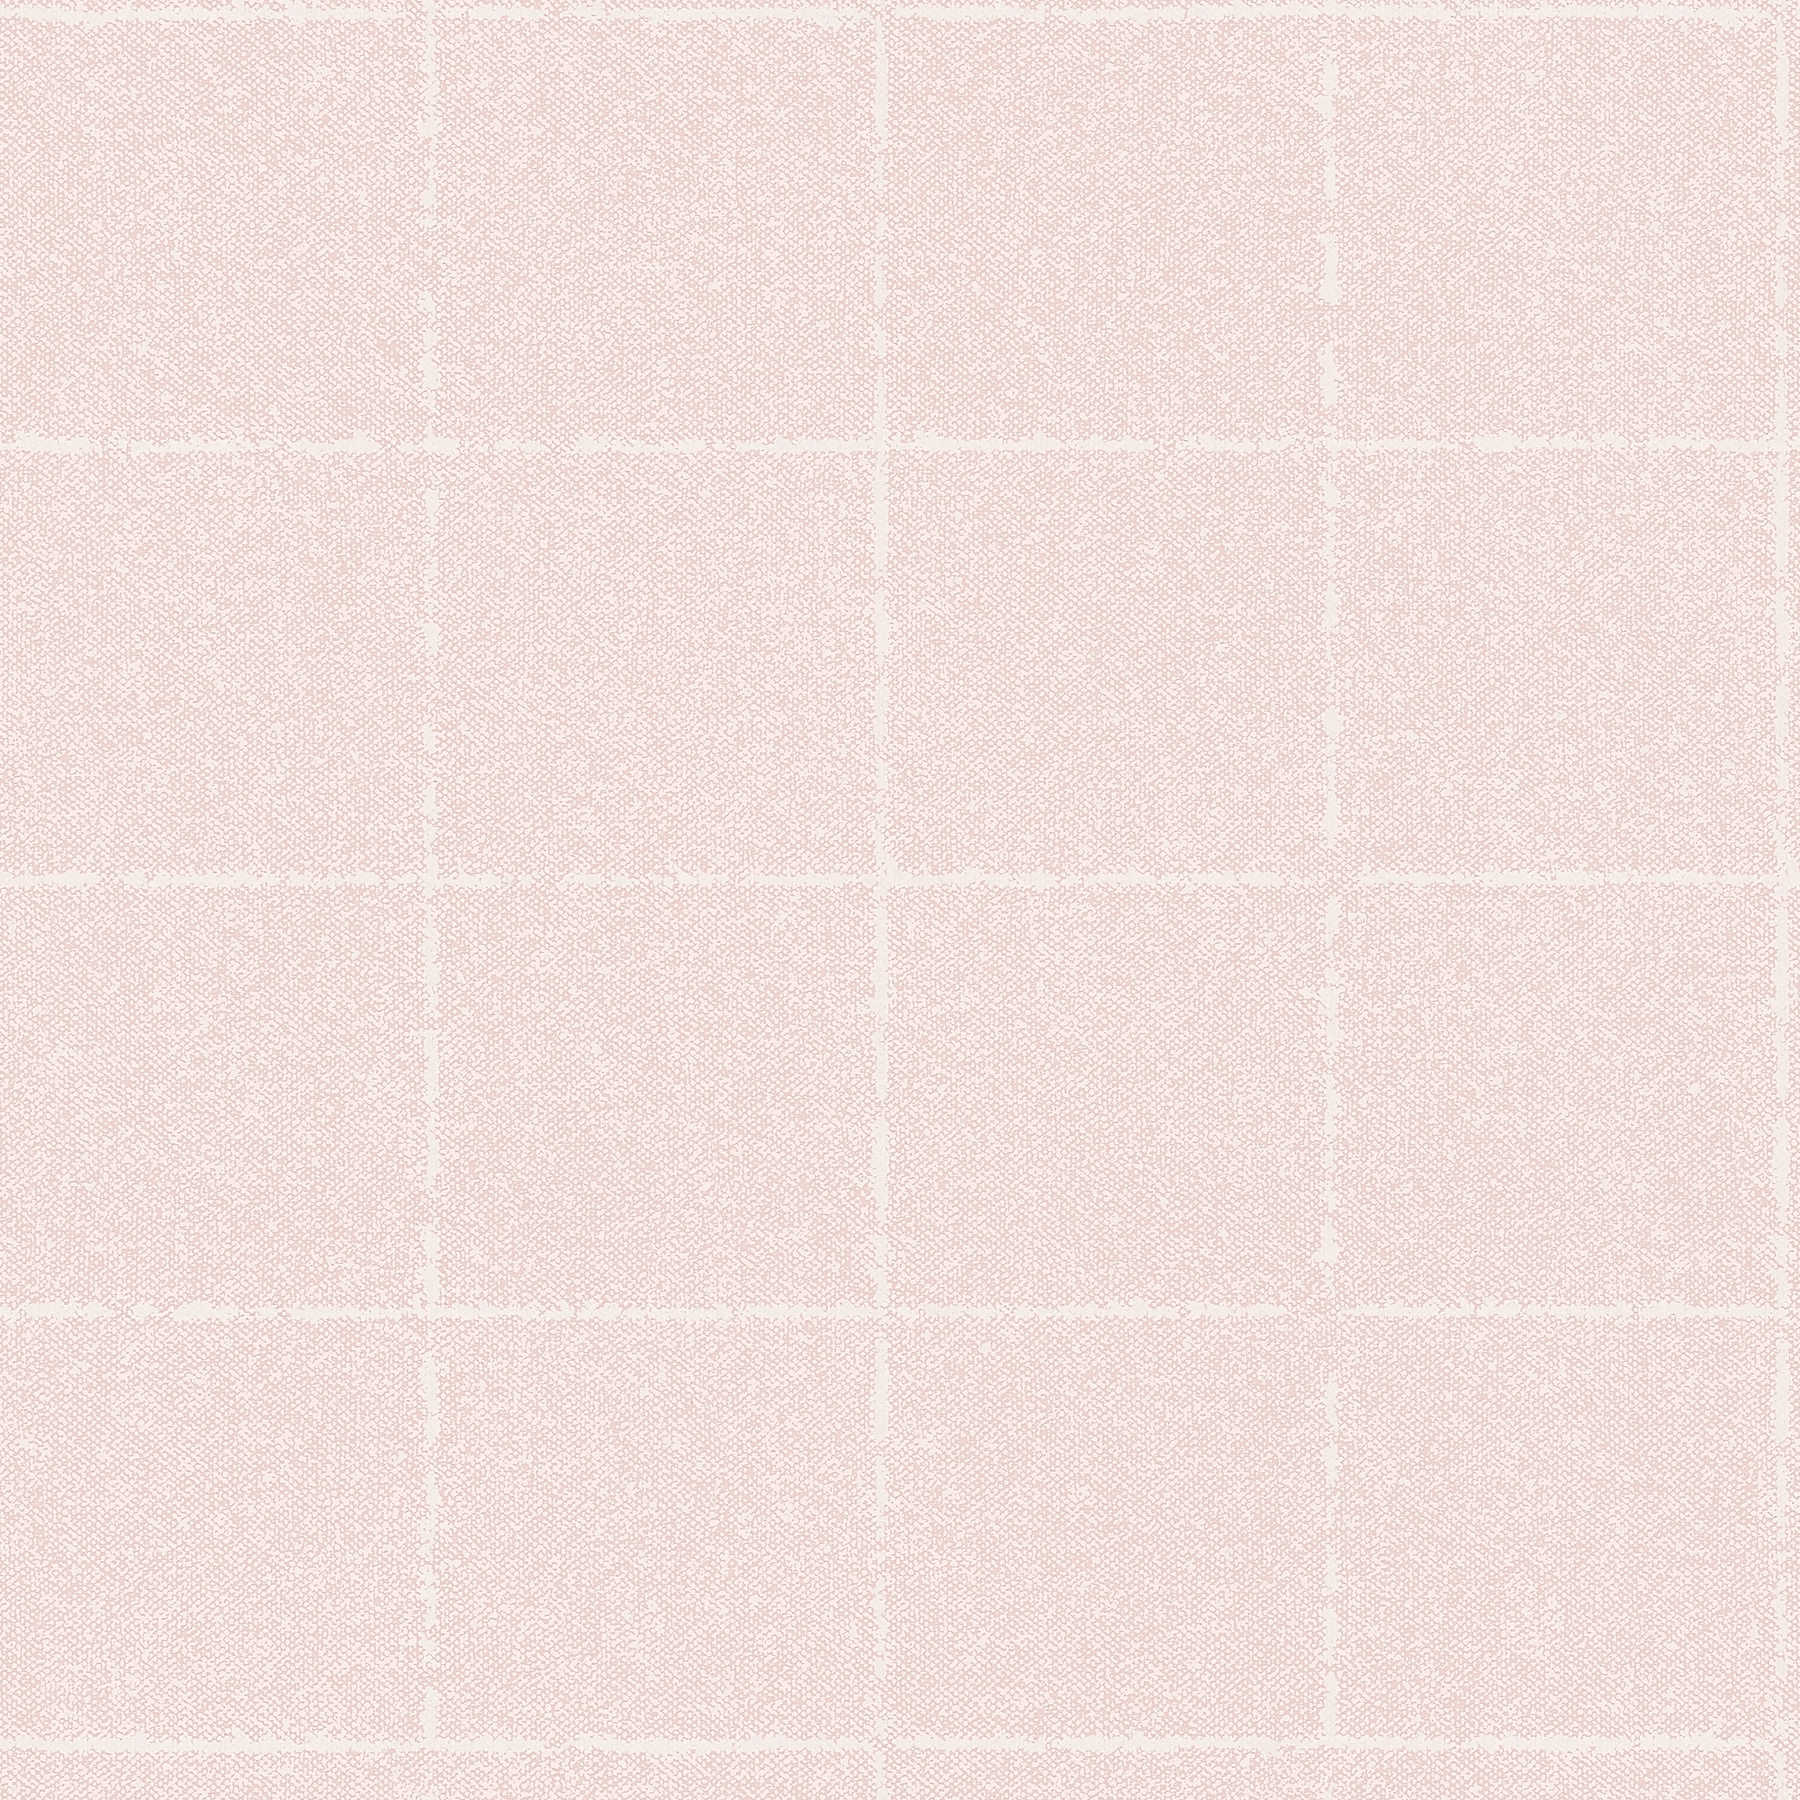 Carta da parati a scacchi in tessuto ottico, testurizzato - rosa, bianco, crema
